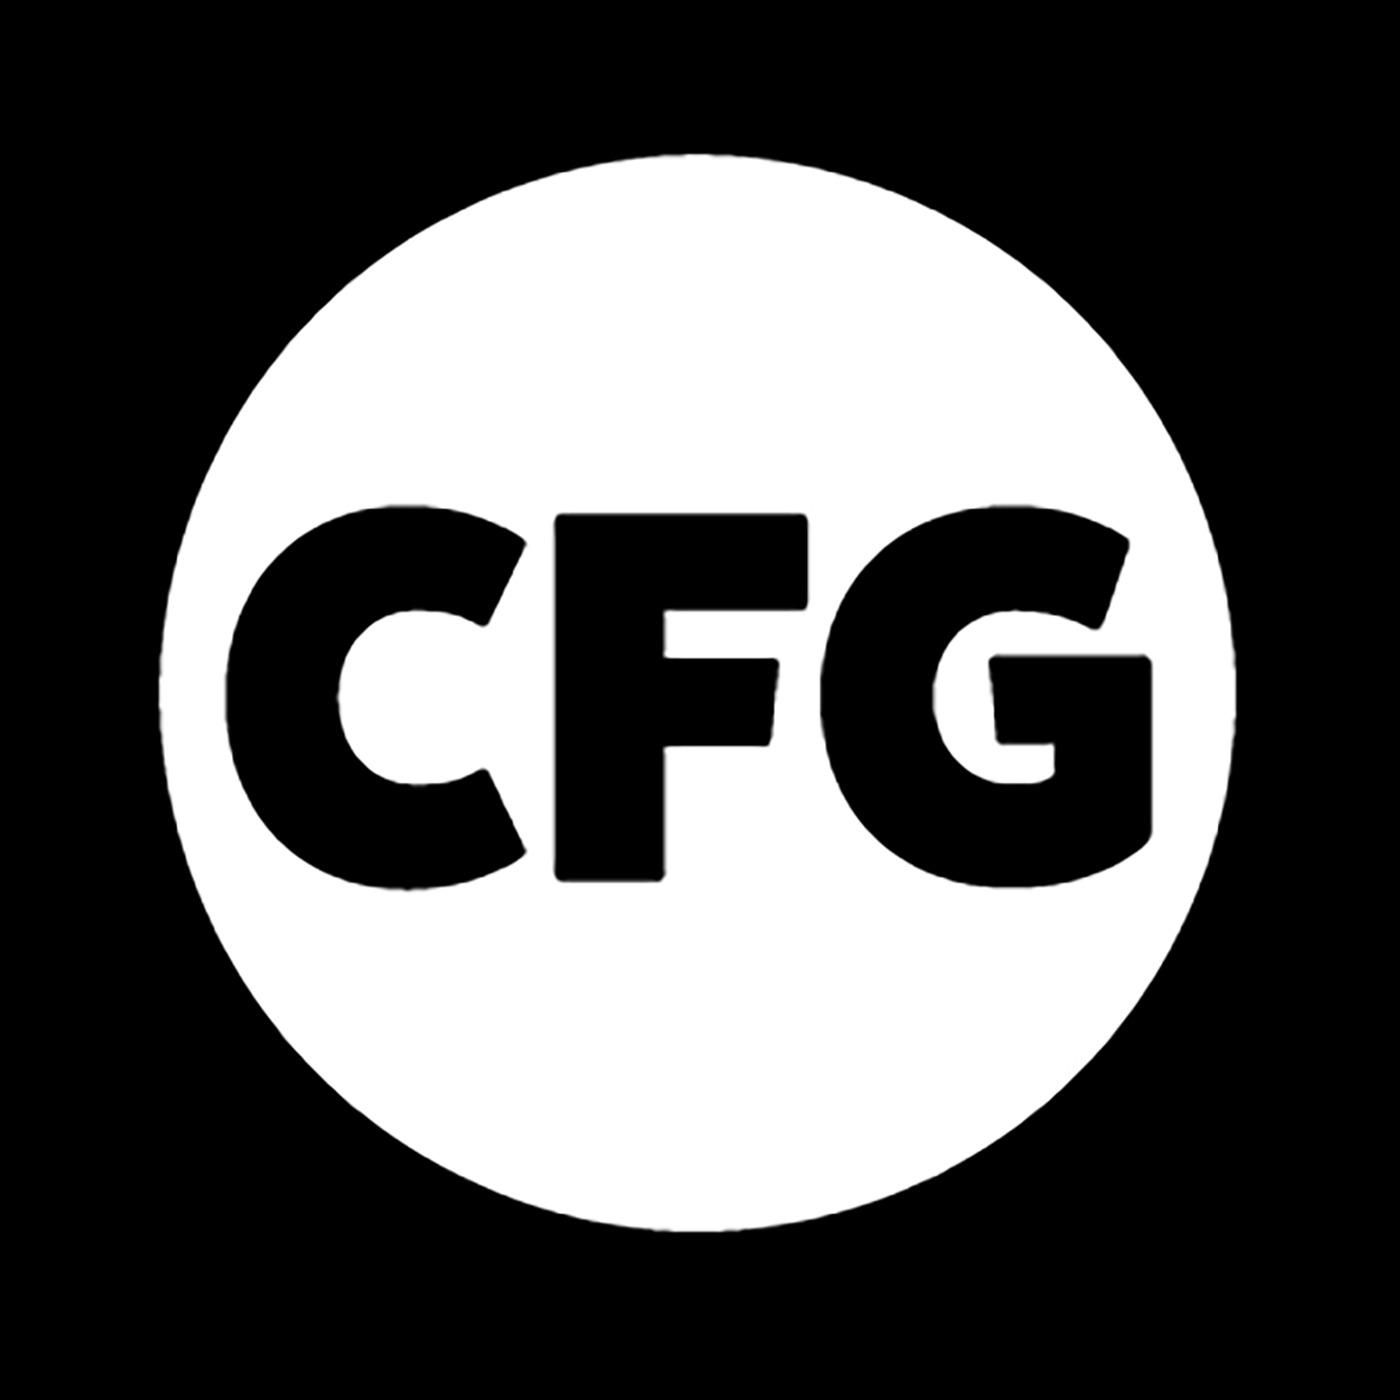 CFG wrestling